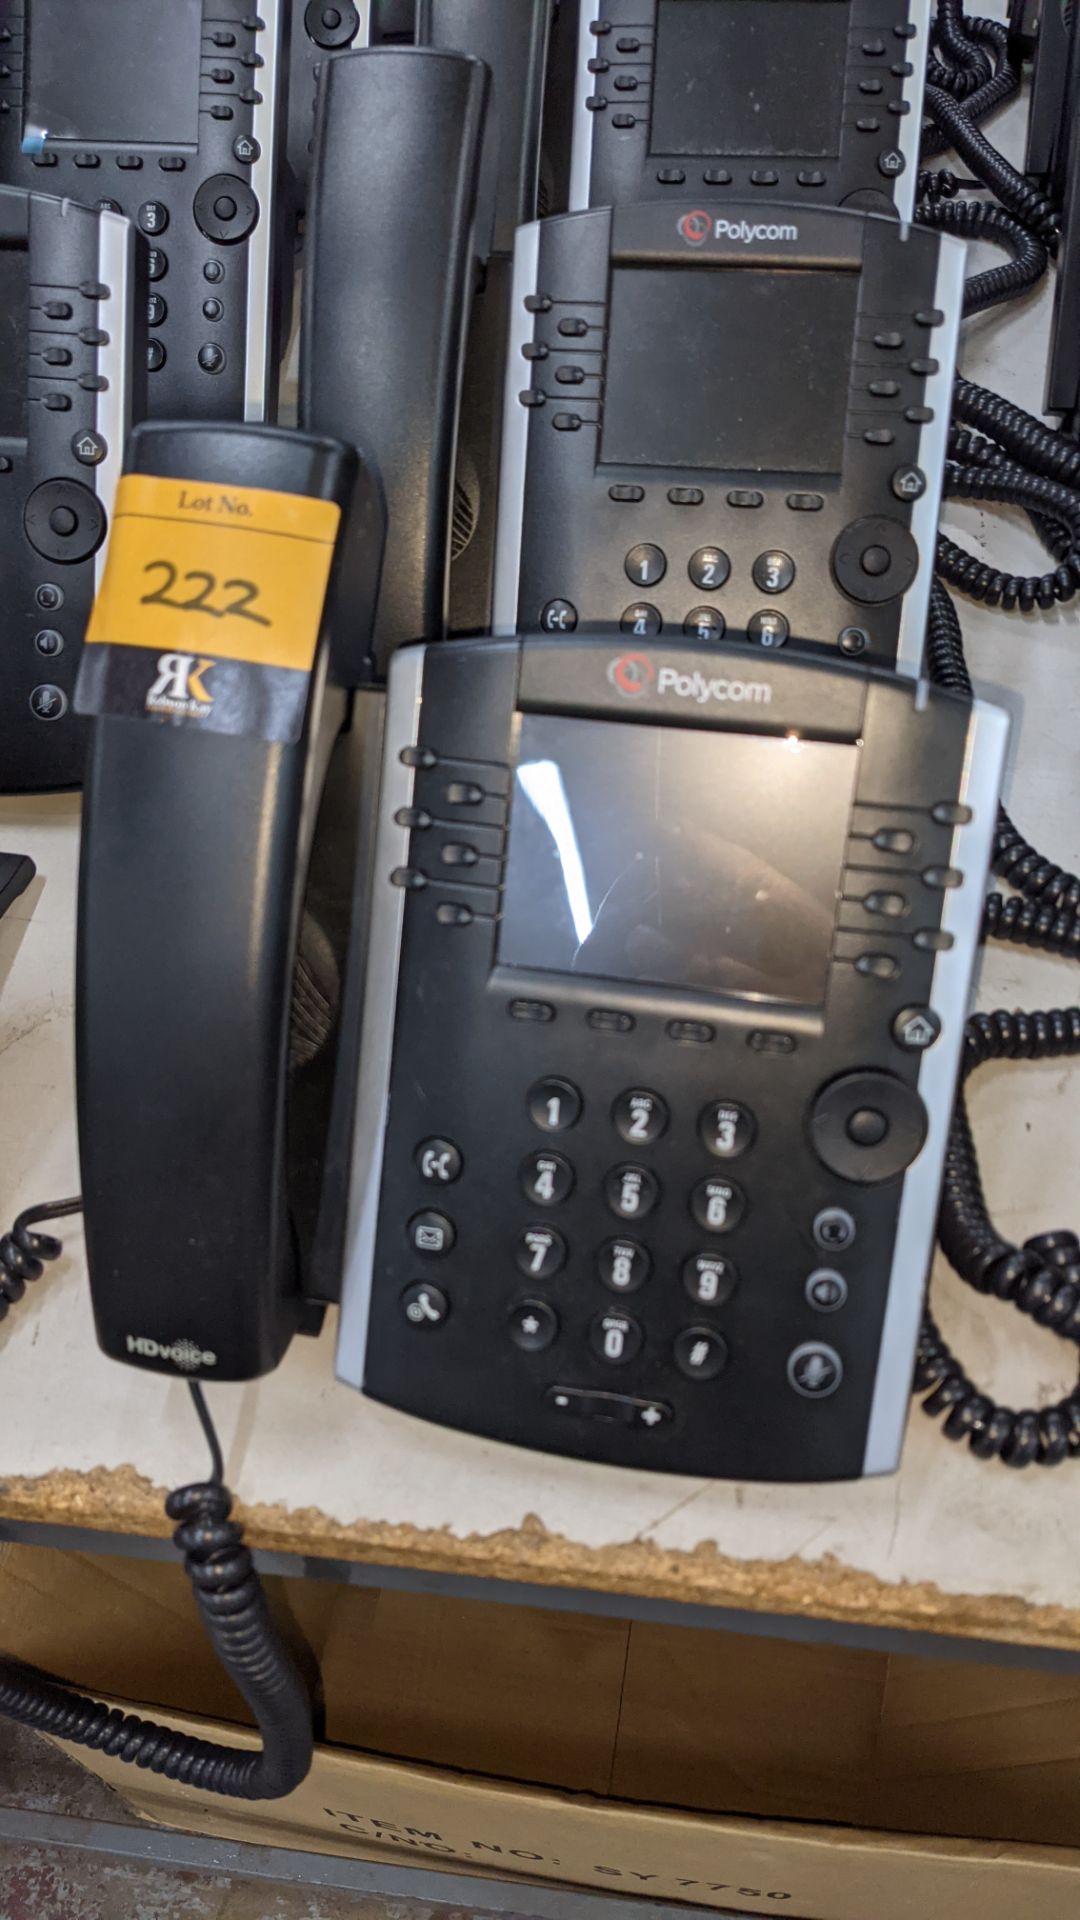 10 off Polycom model VVX 411 telephone handsets - Image 4 of 7